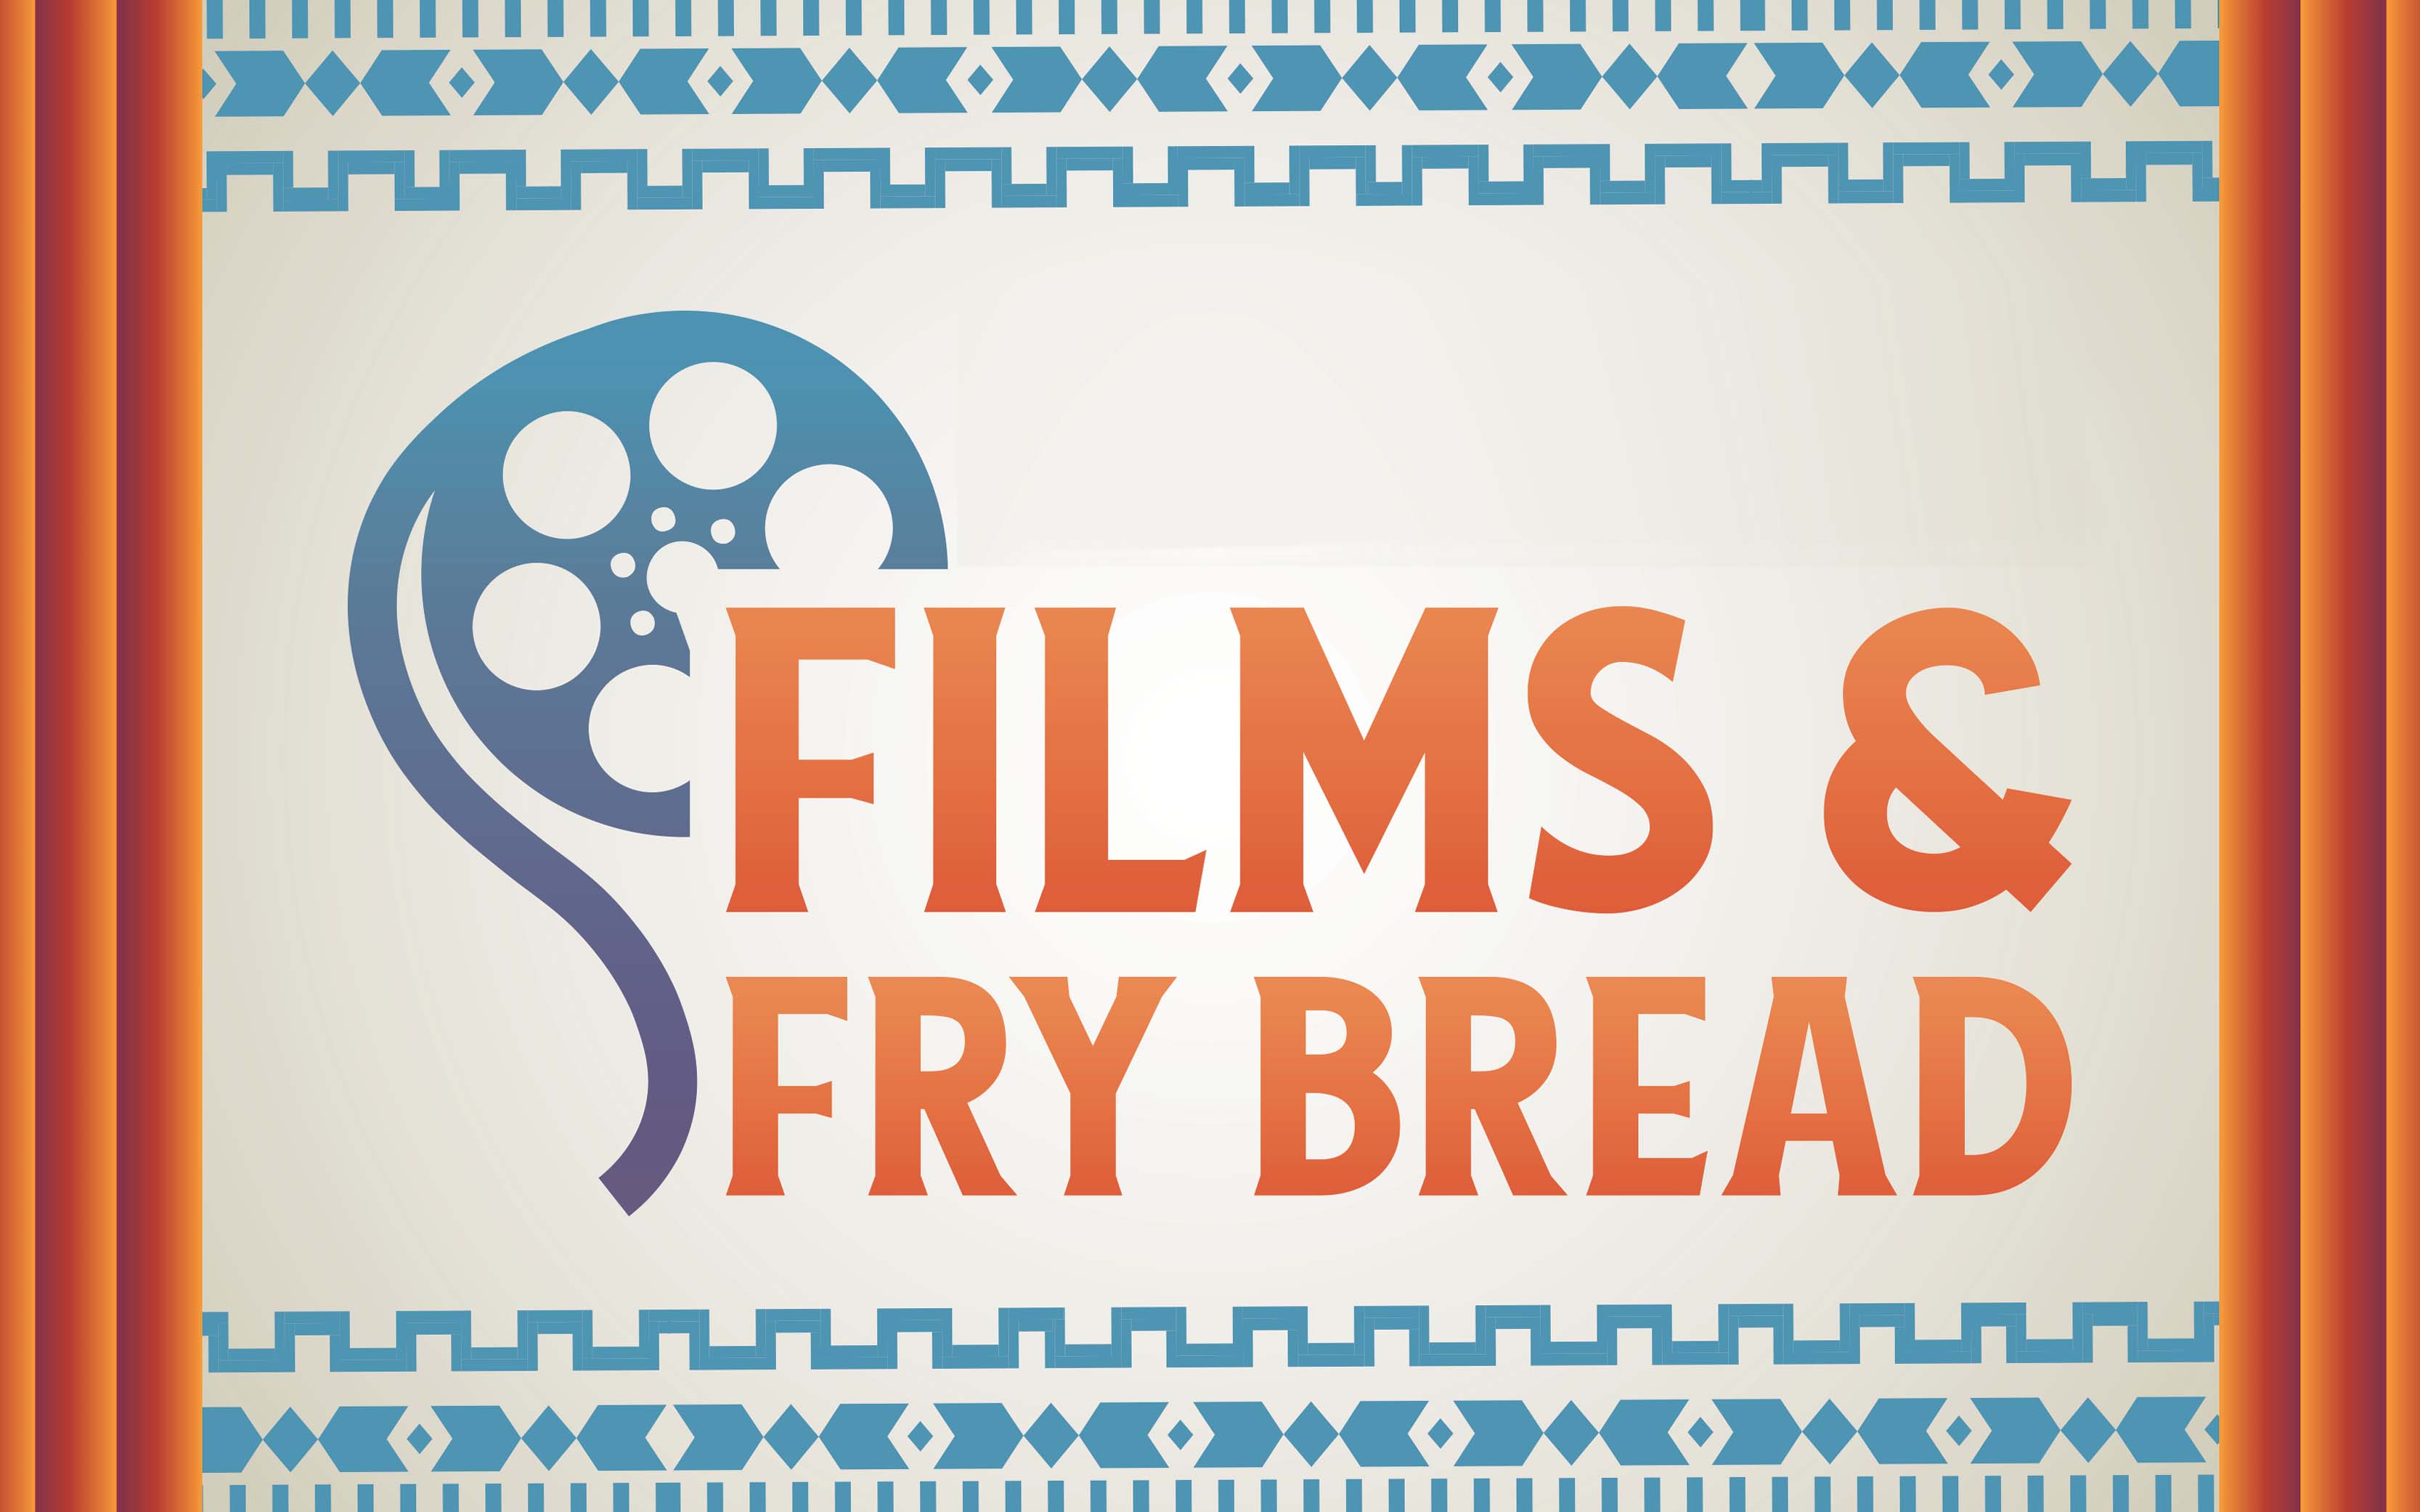 Films & Fry Bread